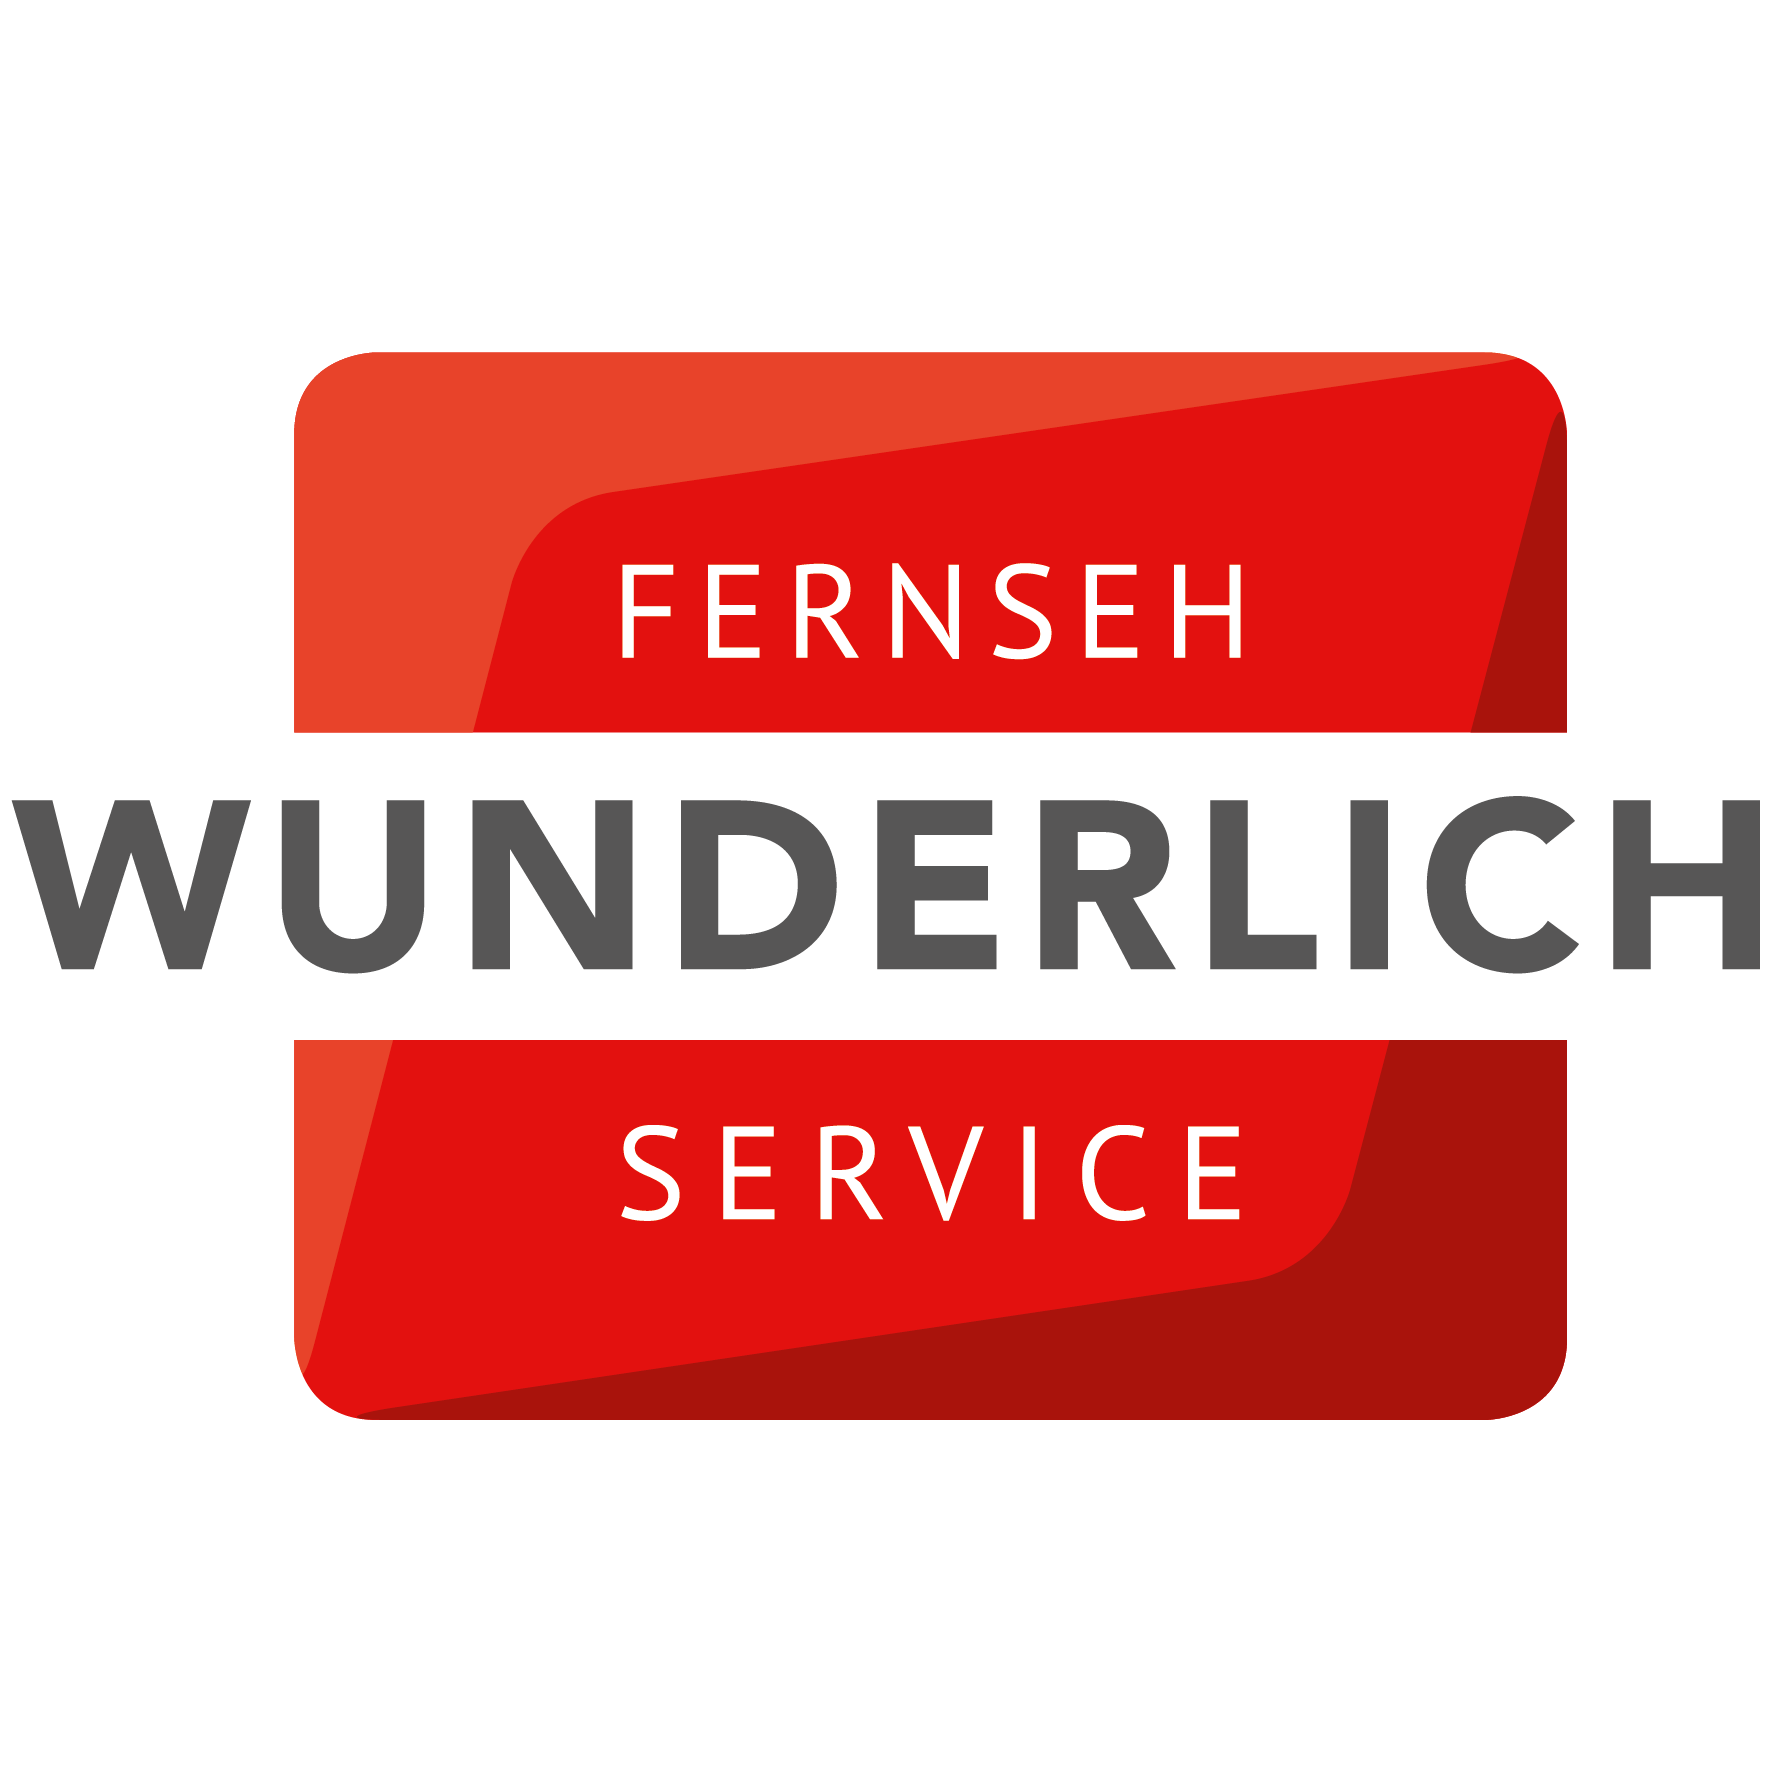 Fernseh-Wunderlich Service GmbH in Braunschweig - Logo